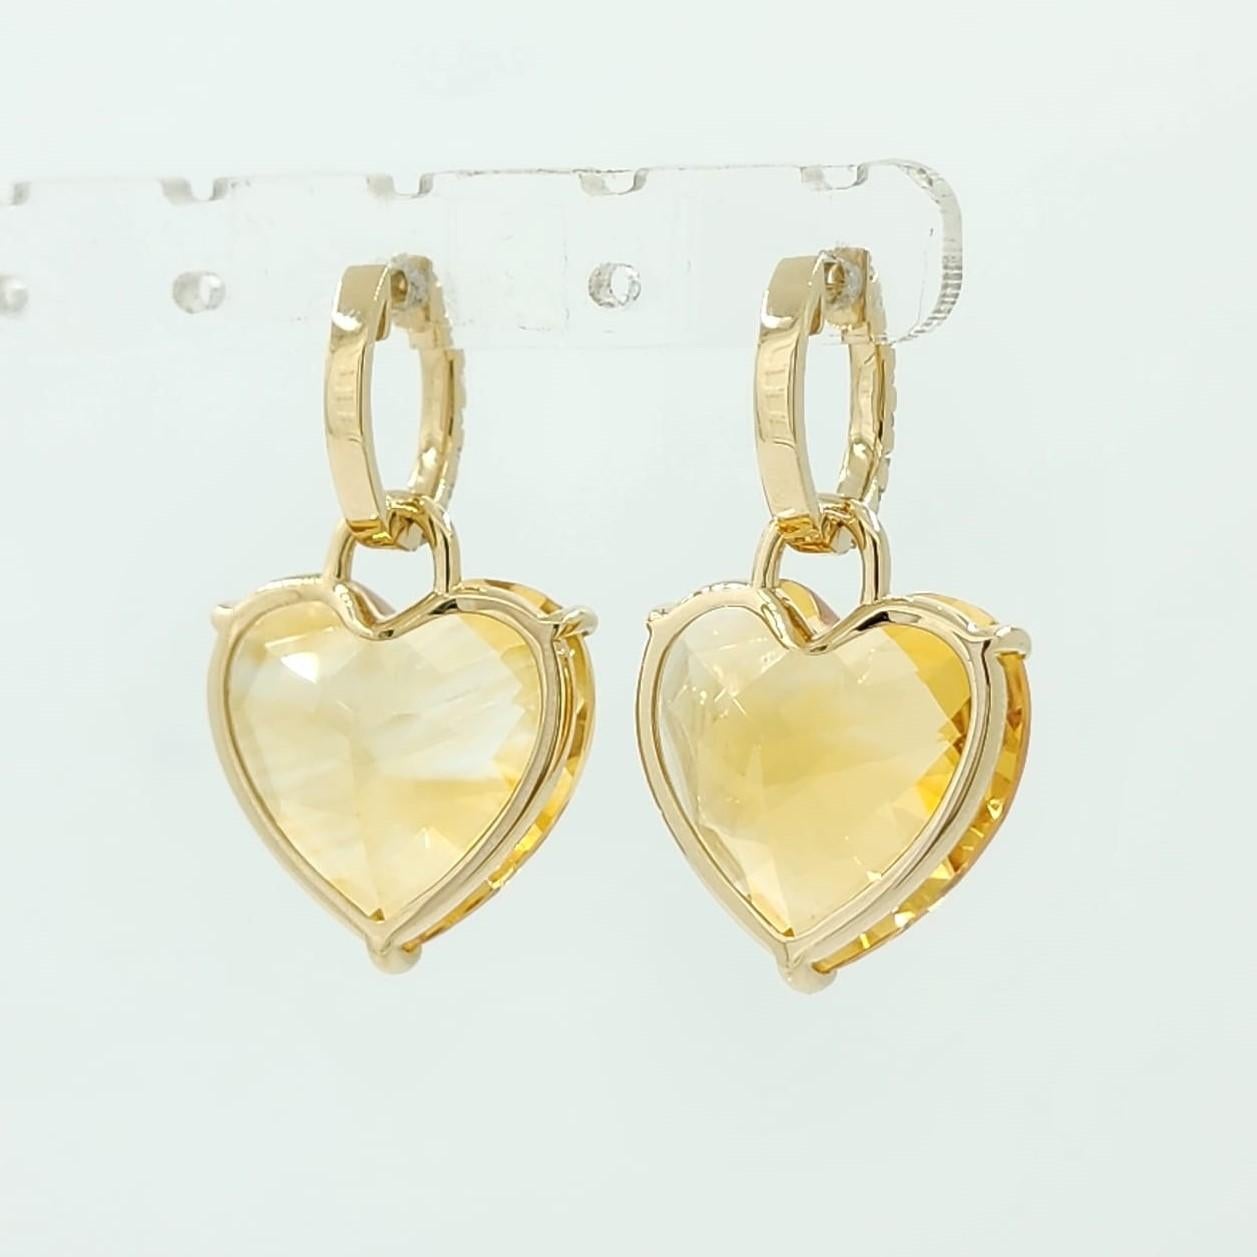 Heart Cut 29 Carat Citrine Heart Dangle Earrings in 14 Karat Yellow Gold For Sale